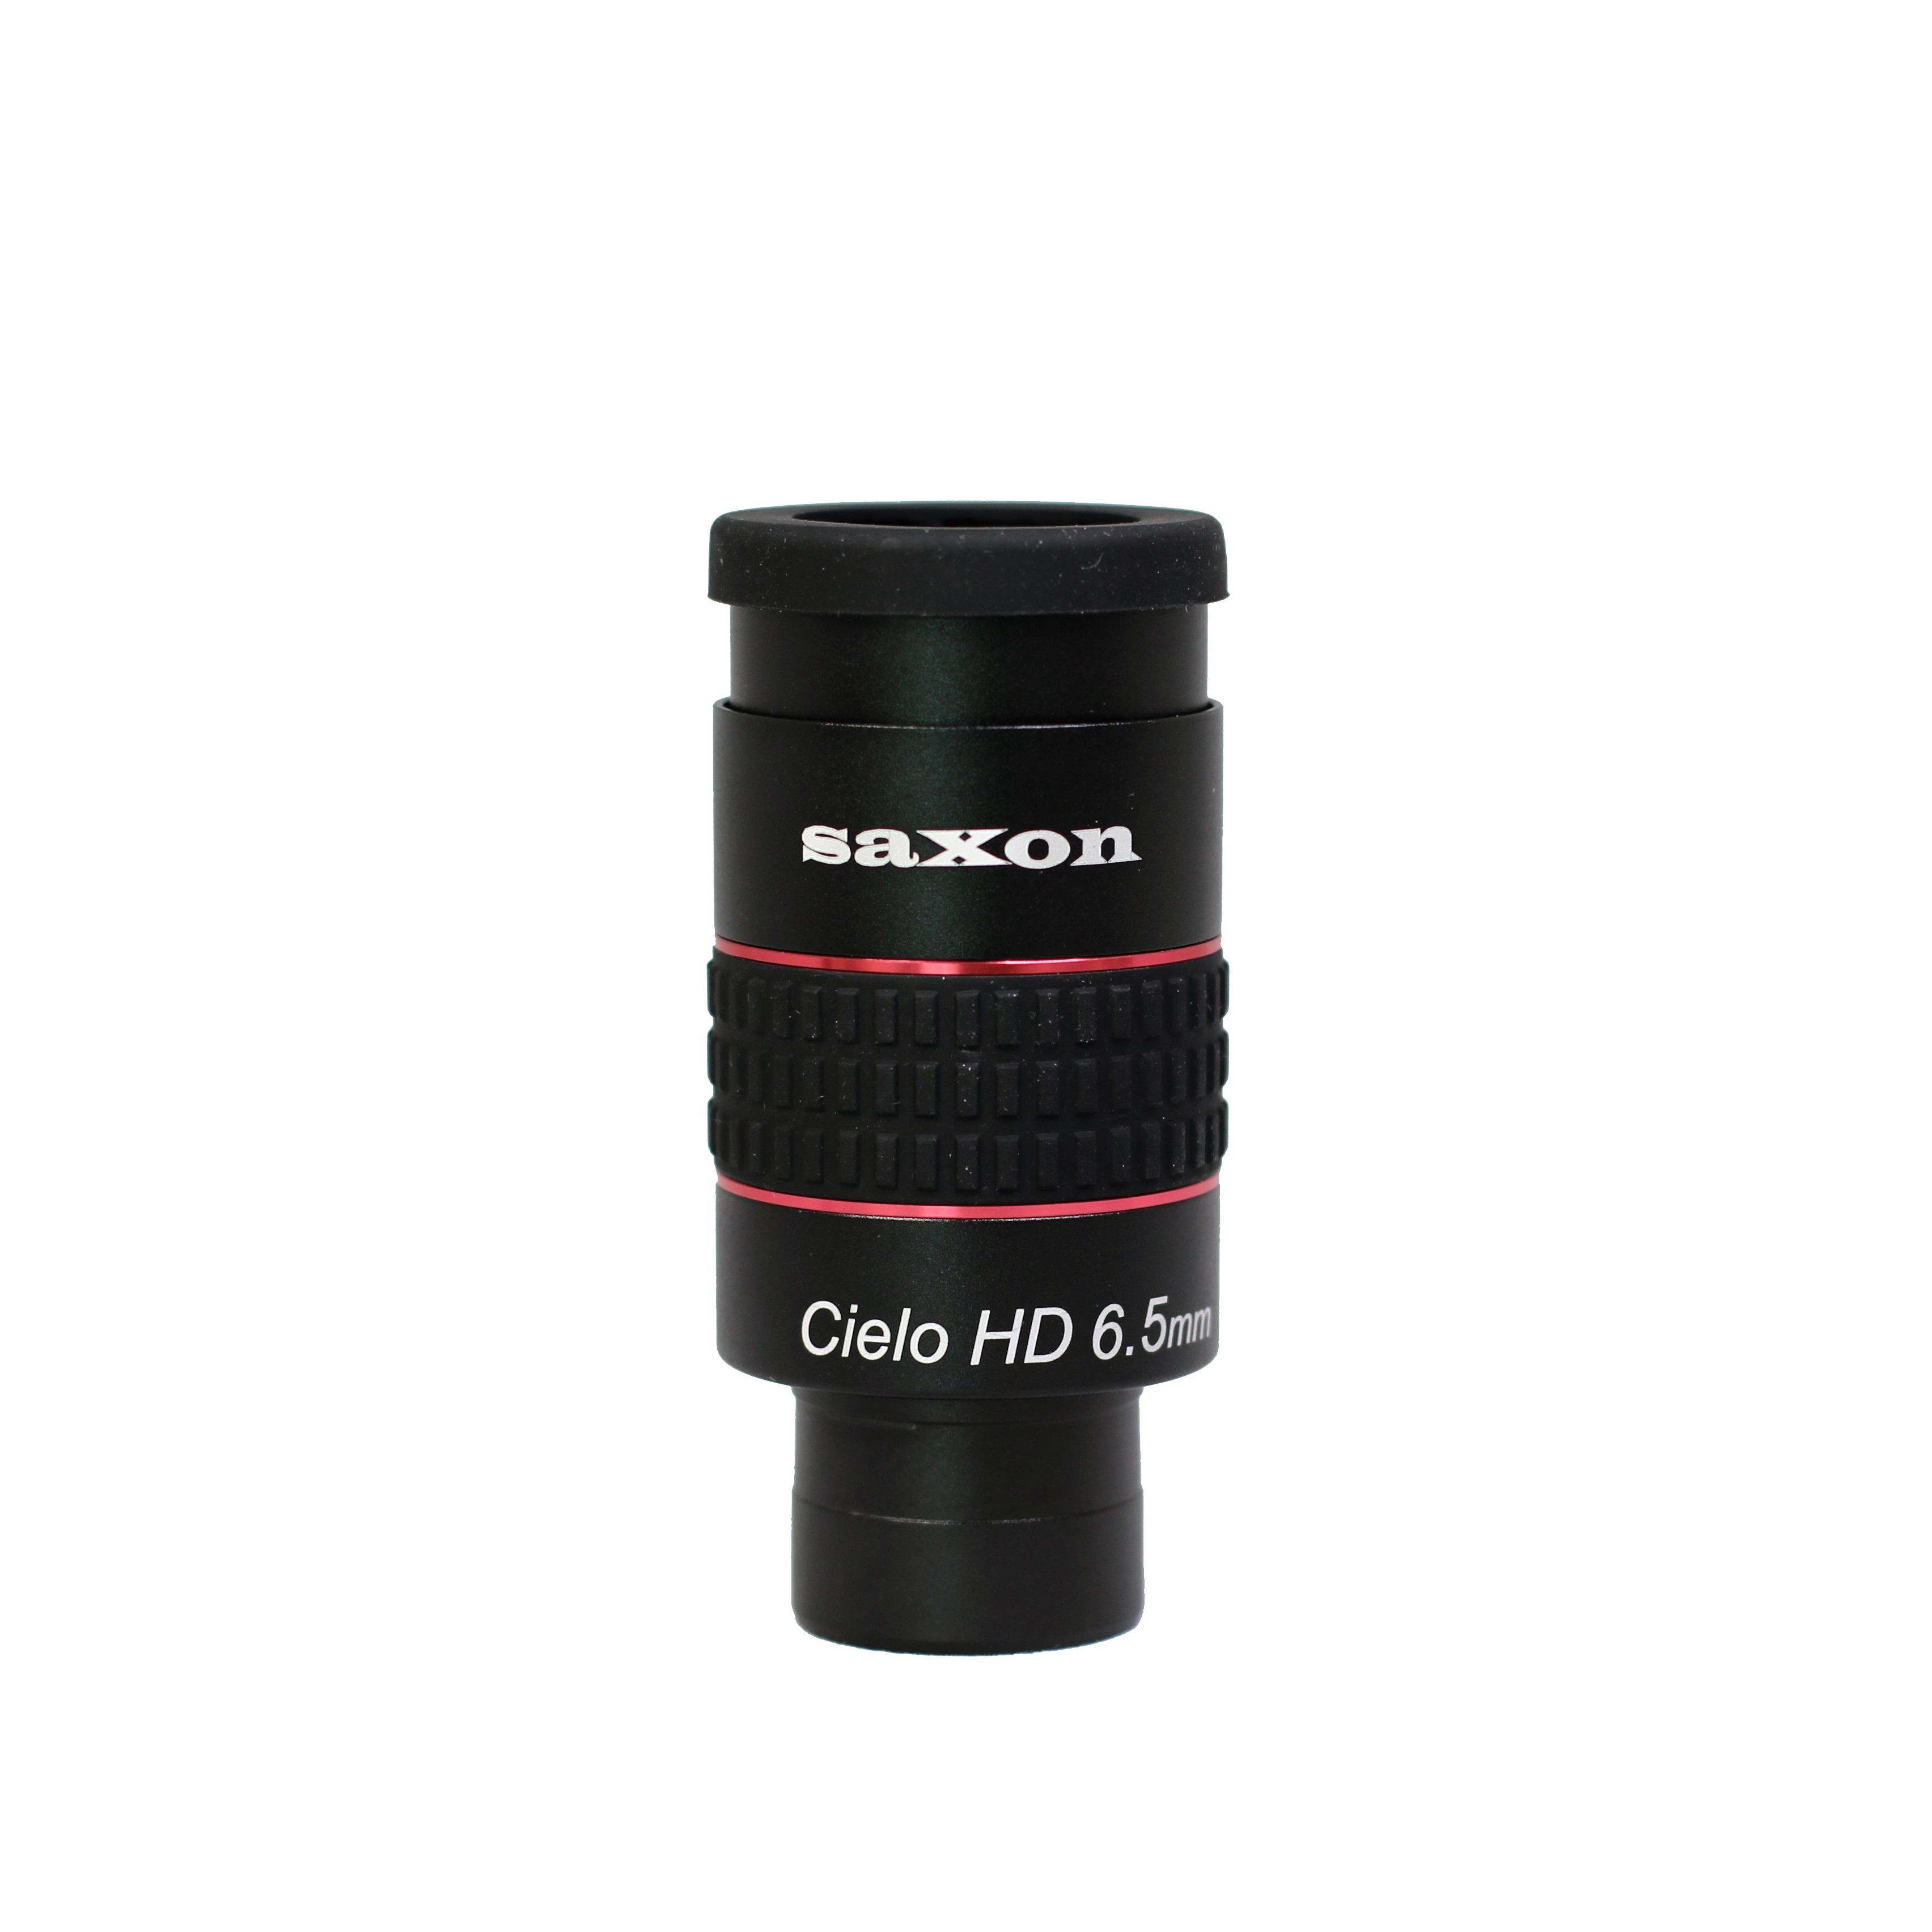 saxon Cielo HD 6.5mm 1.25 Inch ED Eyepiece